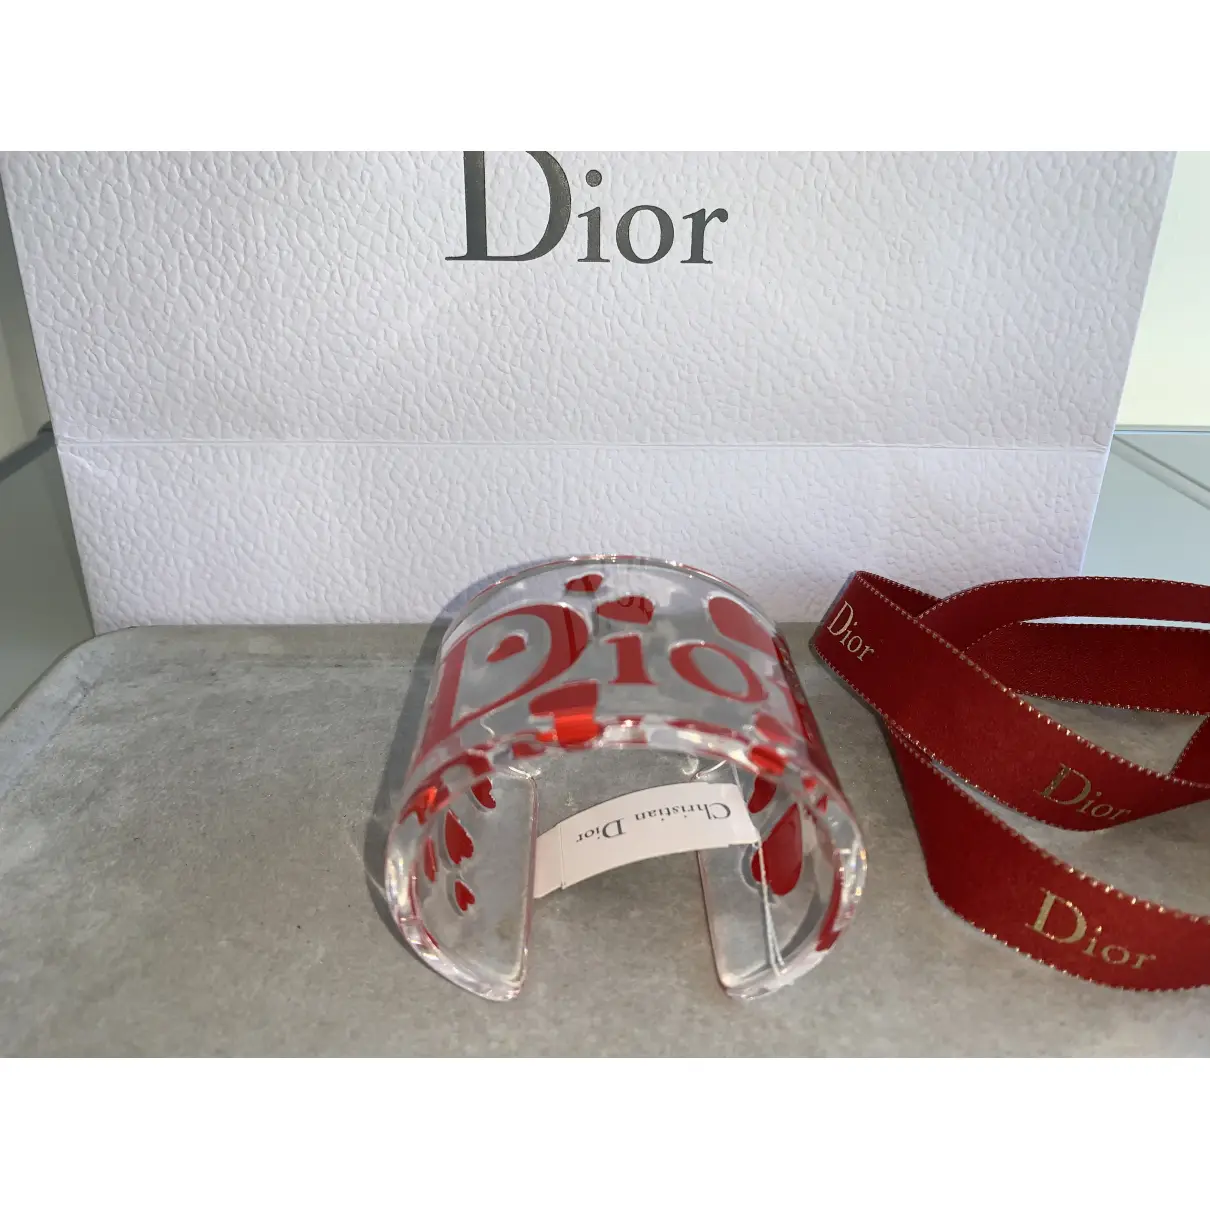 Buy Dior Red Plastic Bracelet online